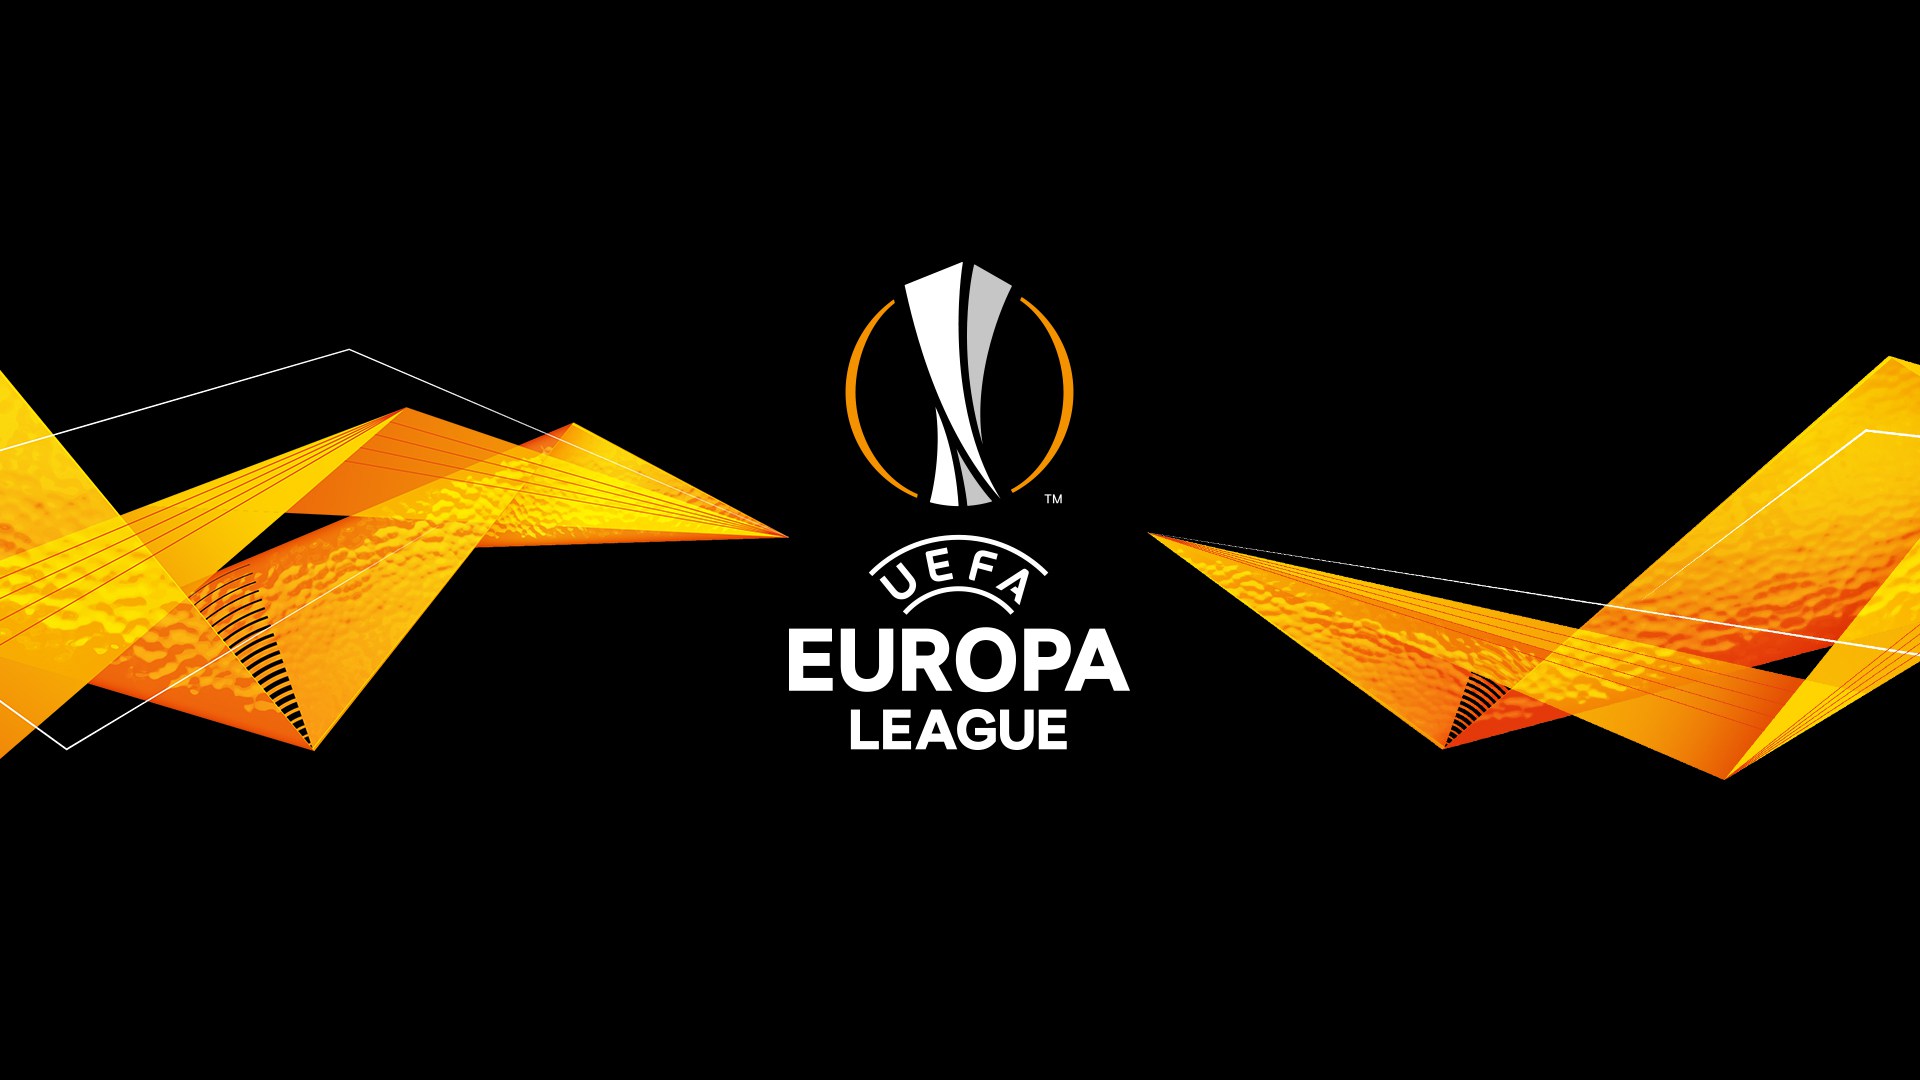 europa league fifa 19